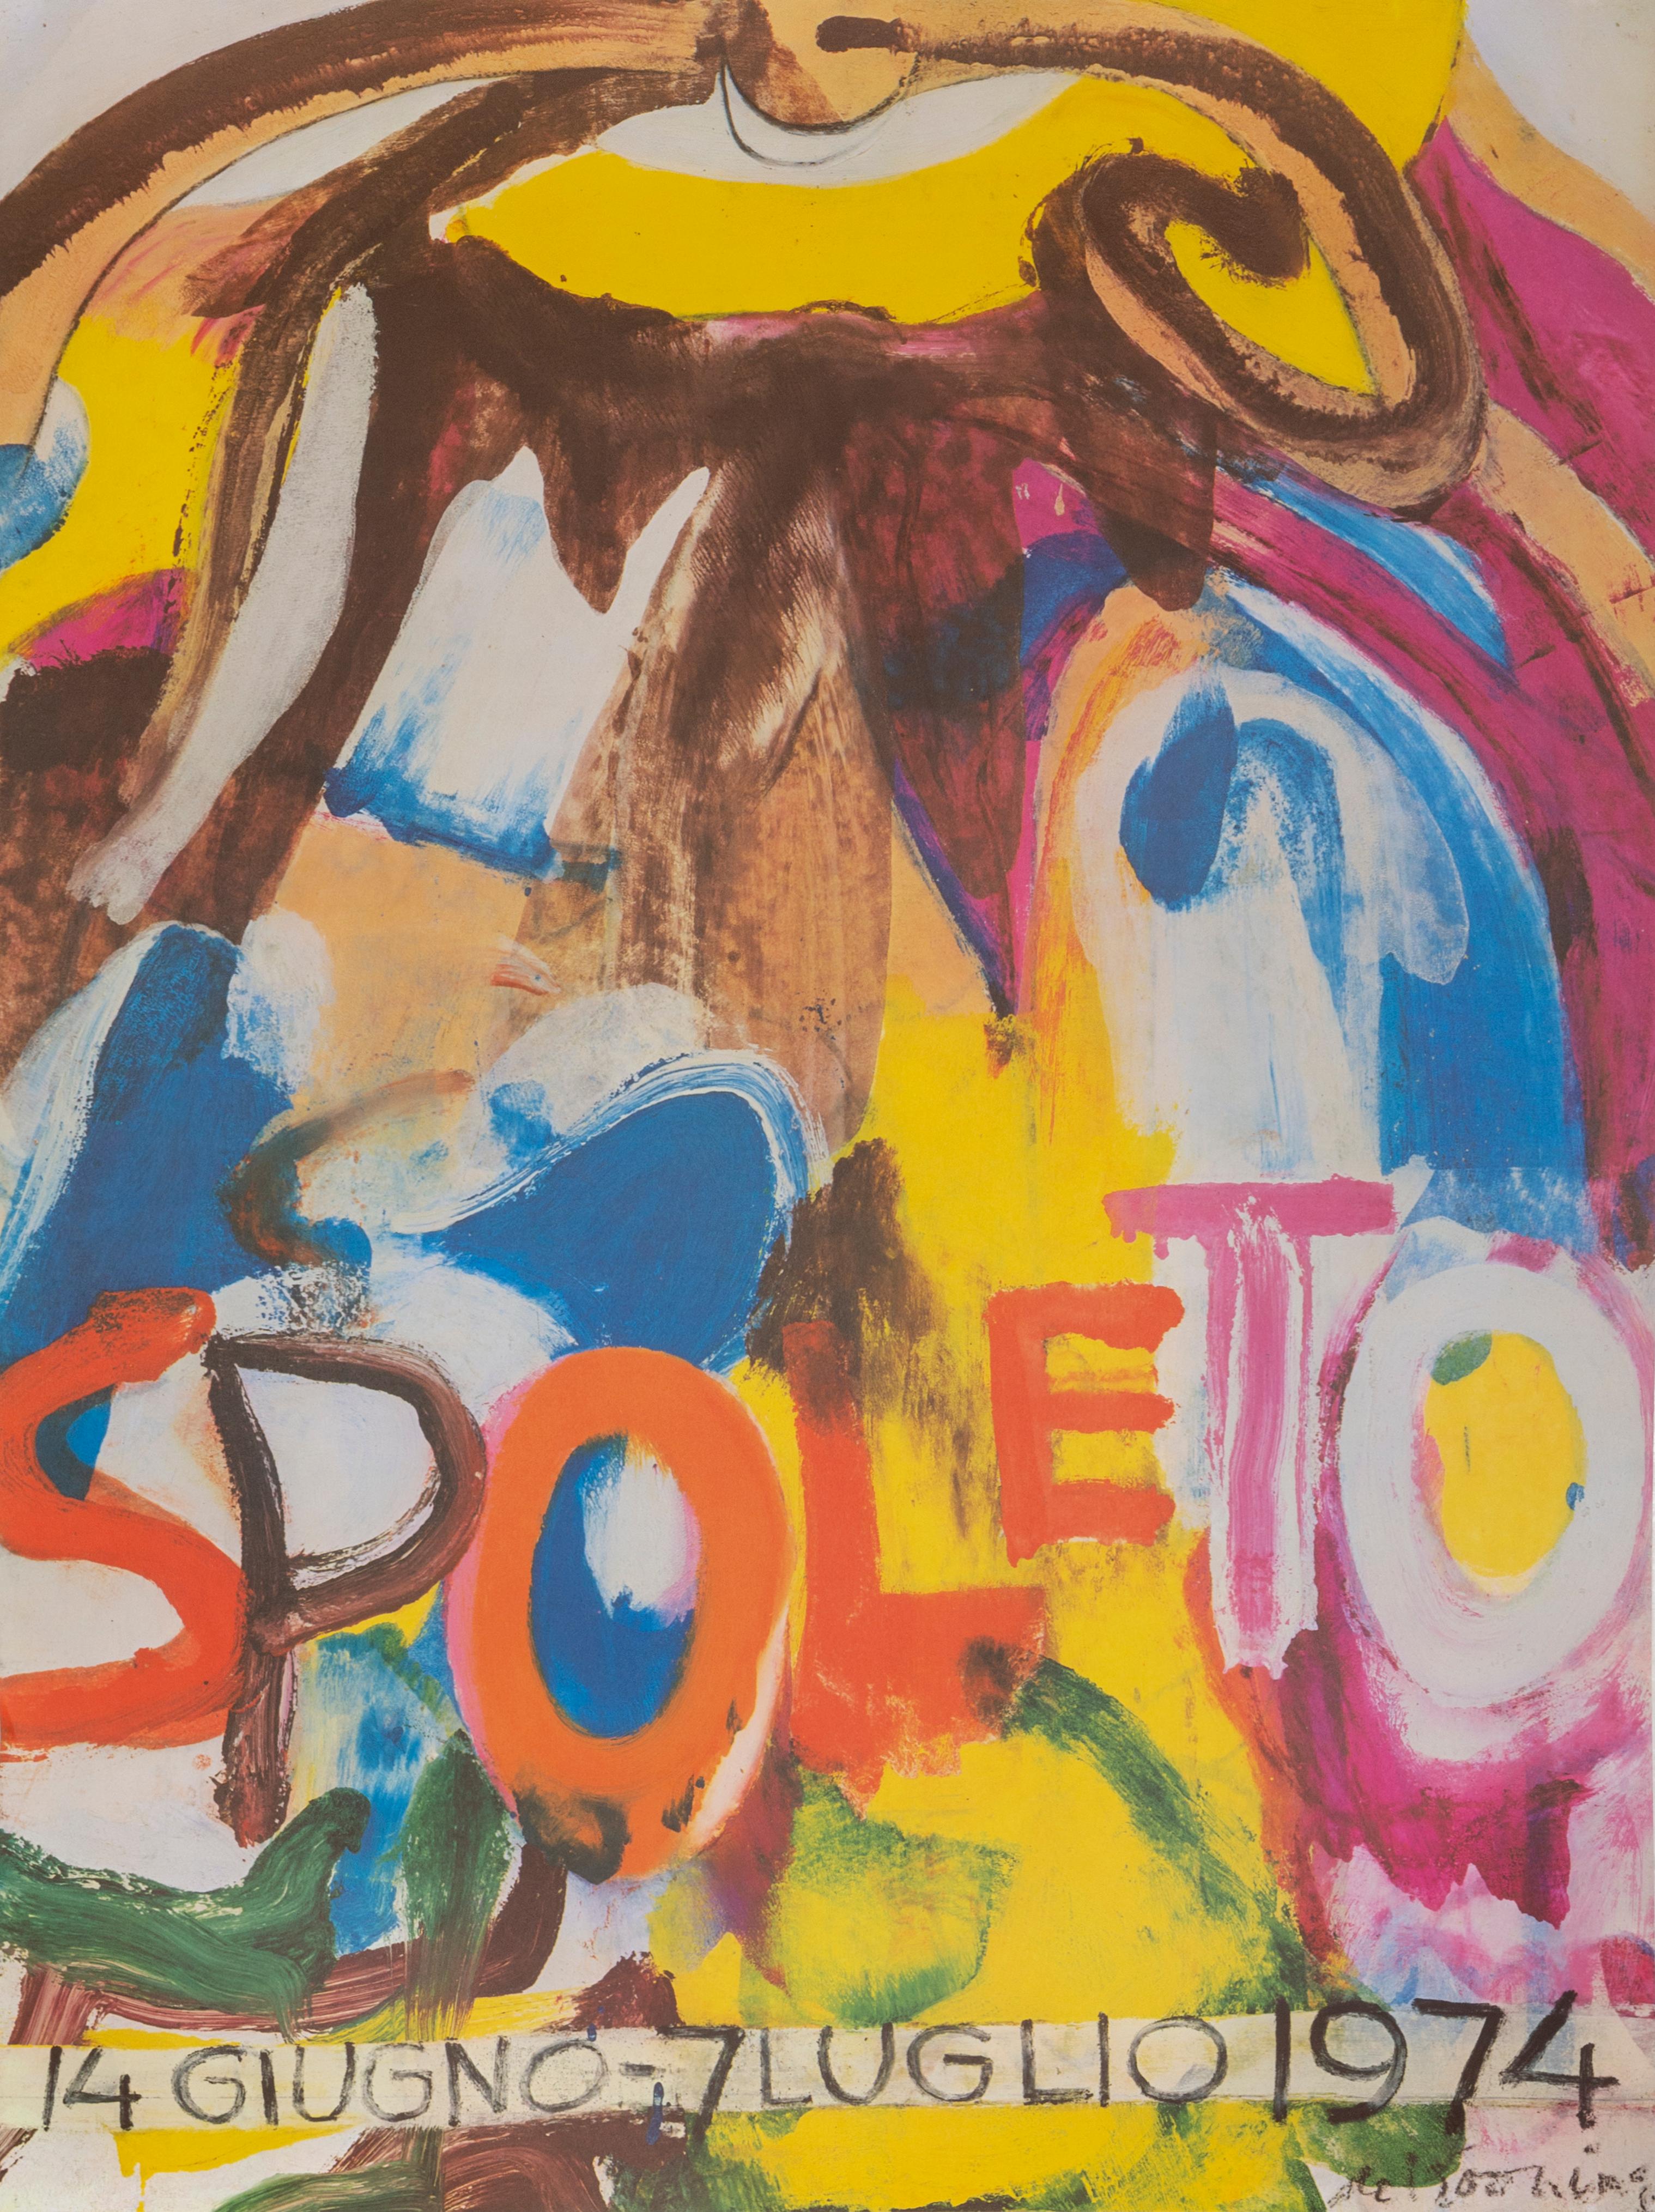 Willem de Kooning Abstract Print - Spoleto